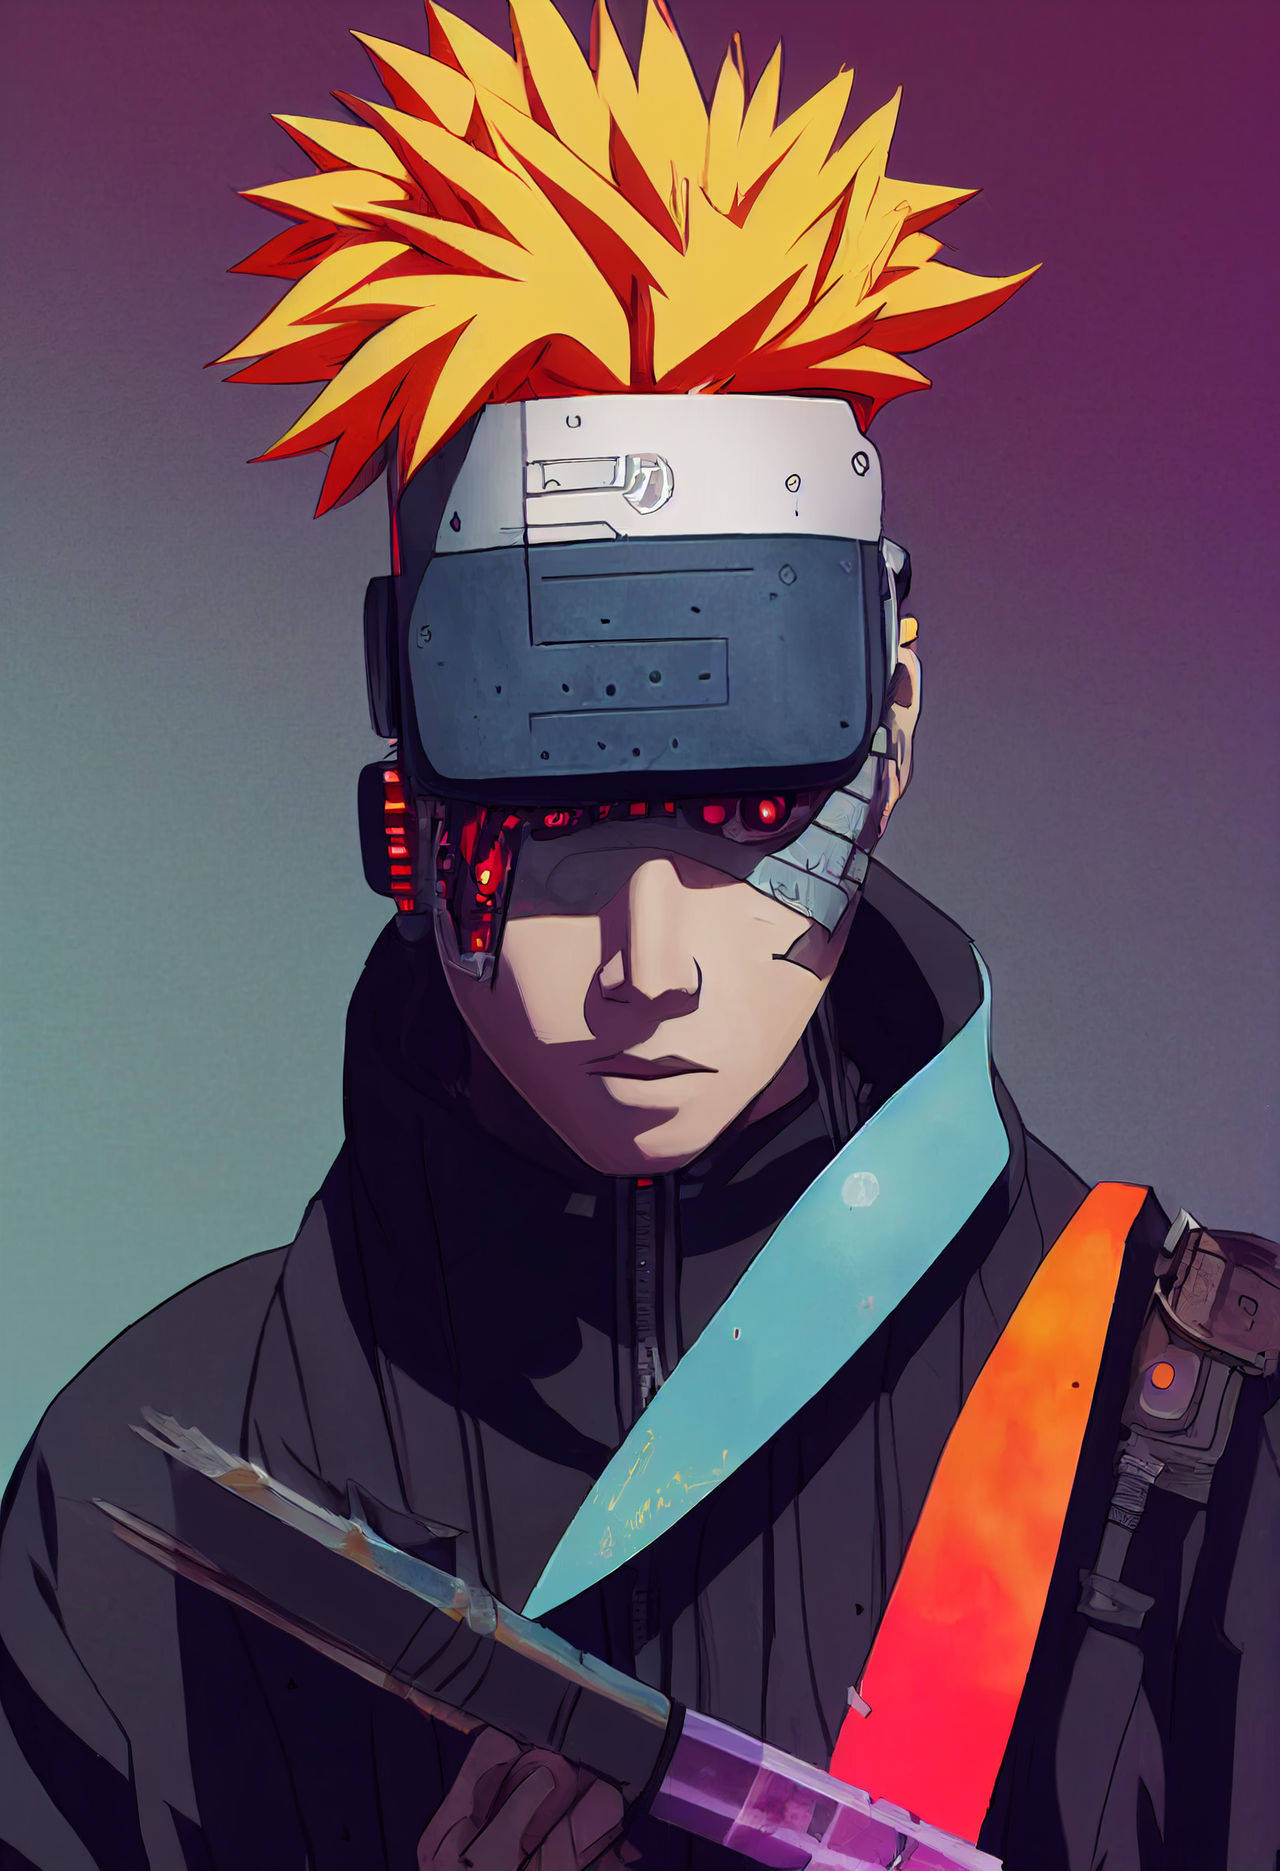 Narutoswag Ser Futuristiskt Ut På Dator- Eller Mobilbakgrund. Wallpaper